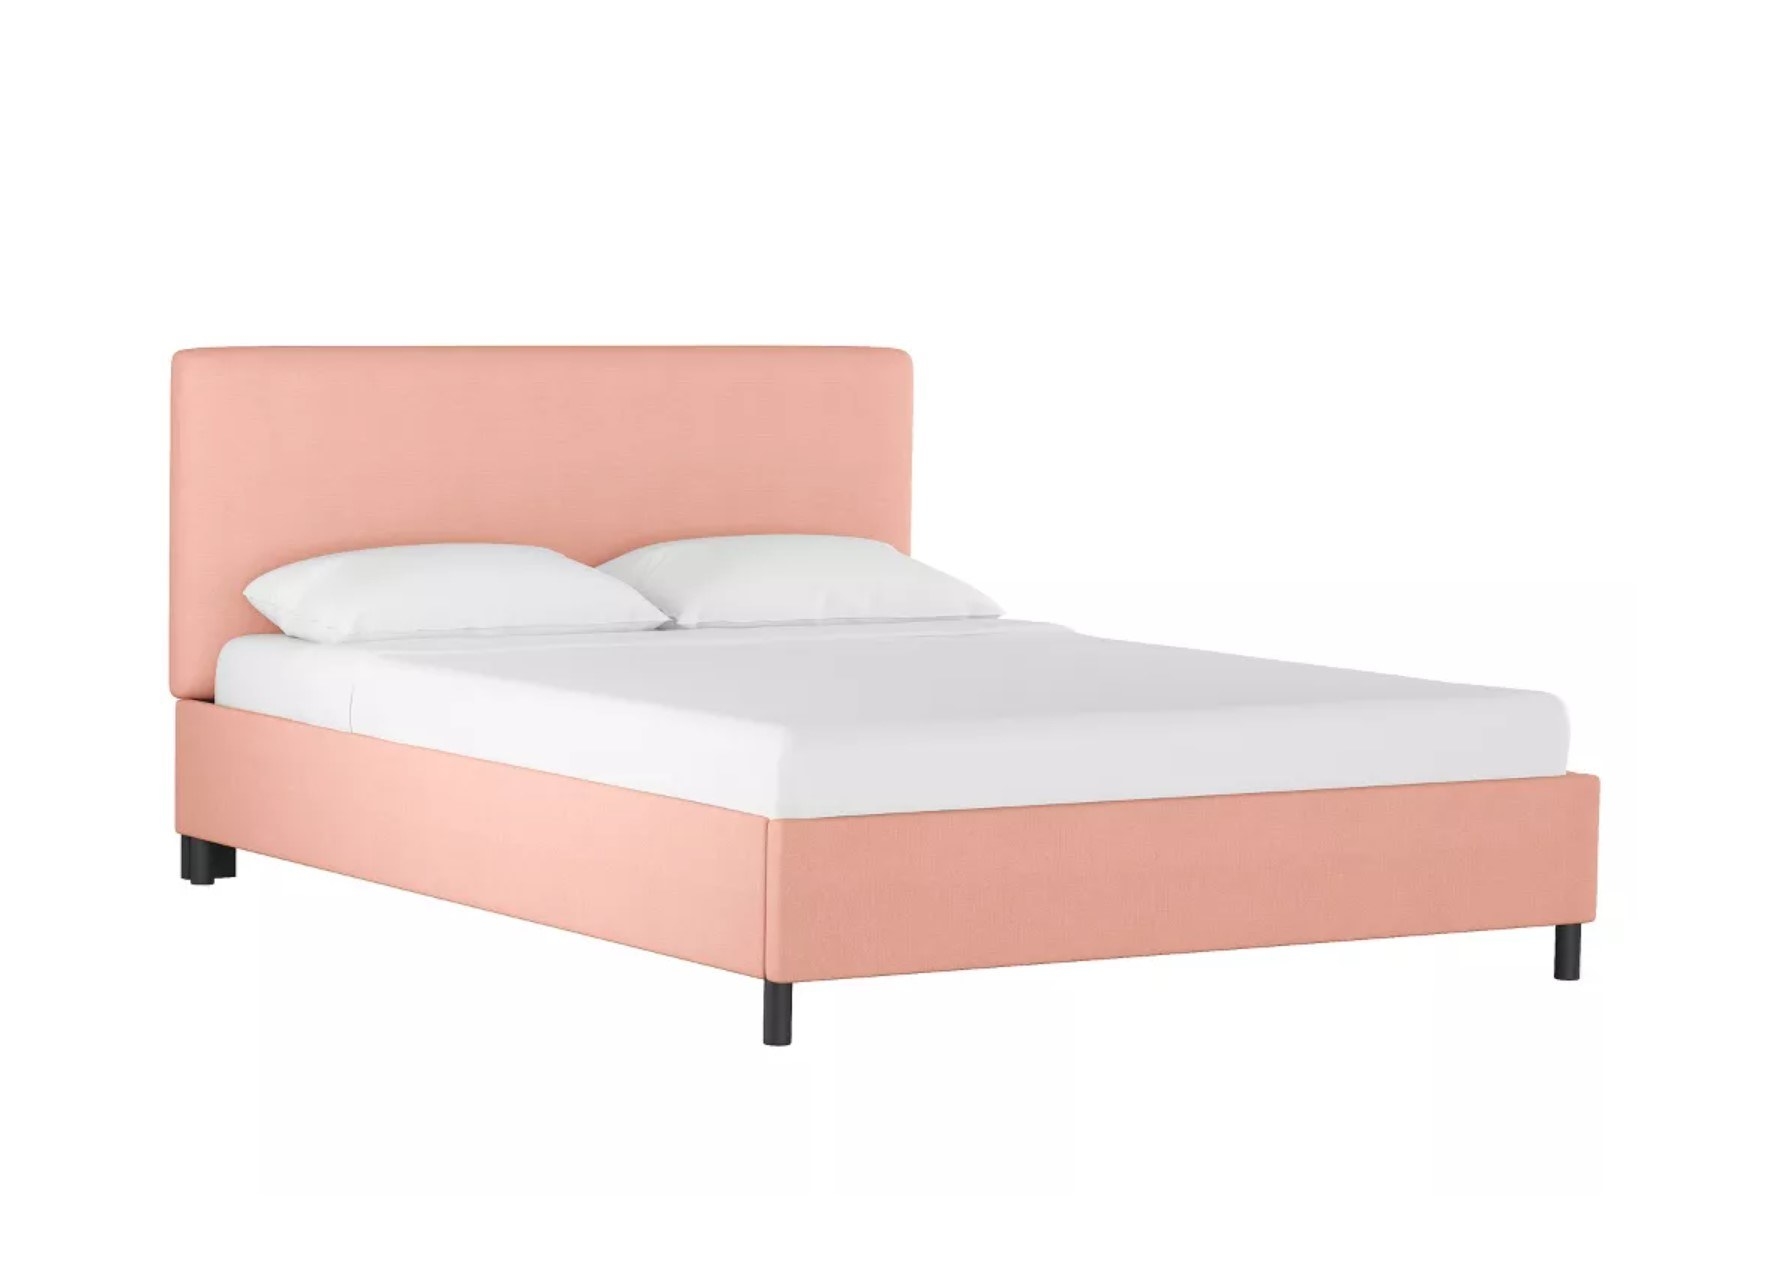 pink platform bed frame